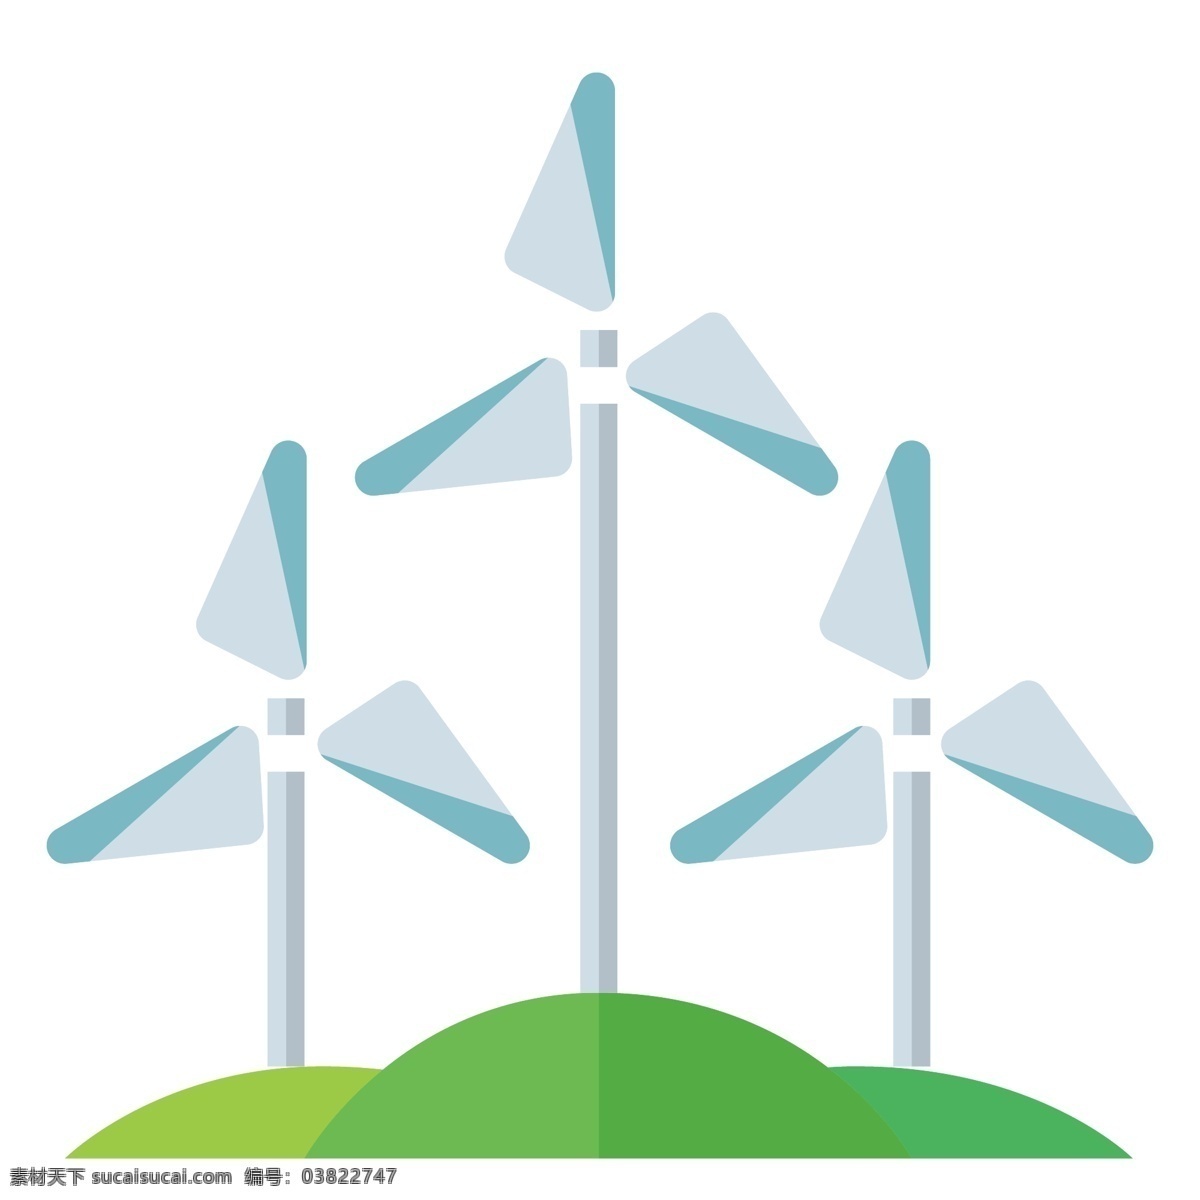 叶片 风车 环保 插画 旋转的叶片 卡通插画 风车插画 环保插画 低碳环保 风力发电 绿色的草坪